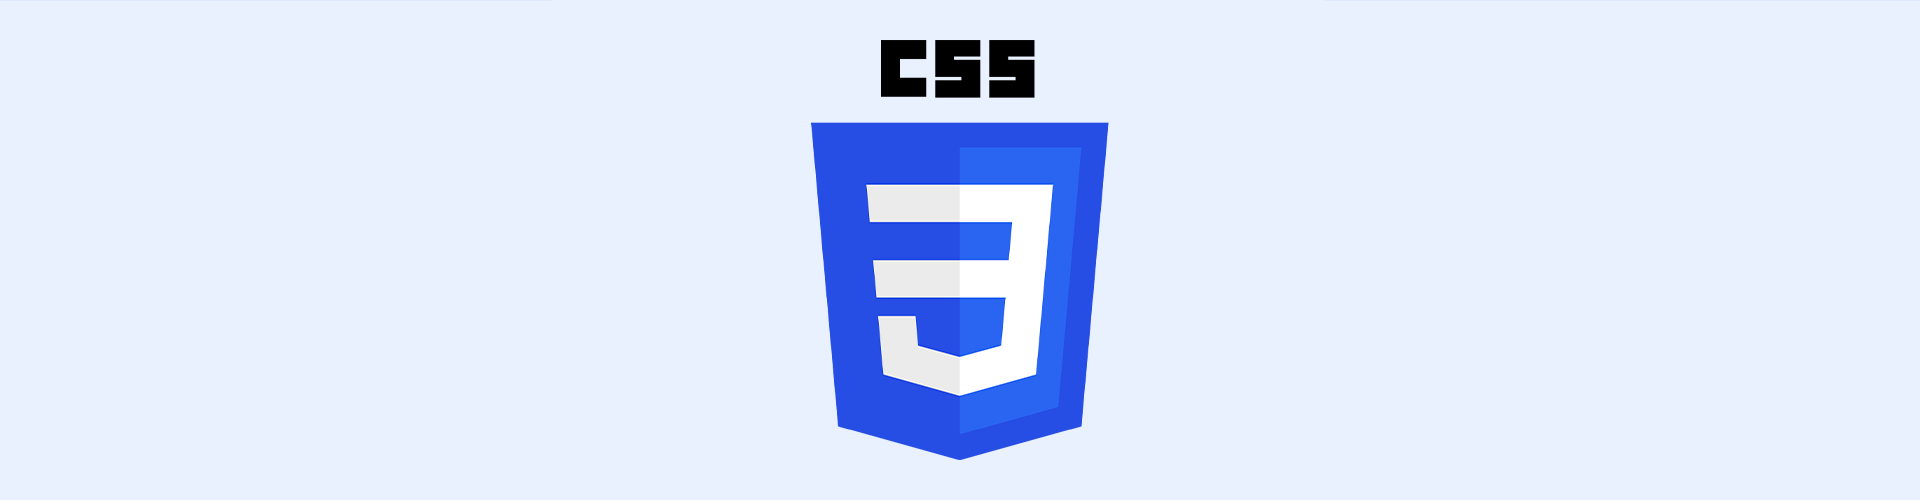 Hostarex blog: CSS nədir? CSS Kodları nədir?